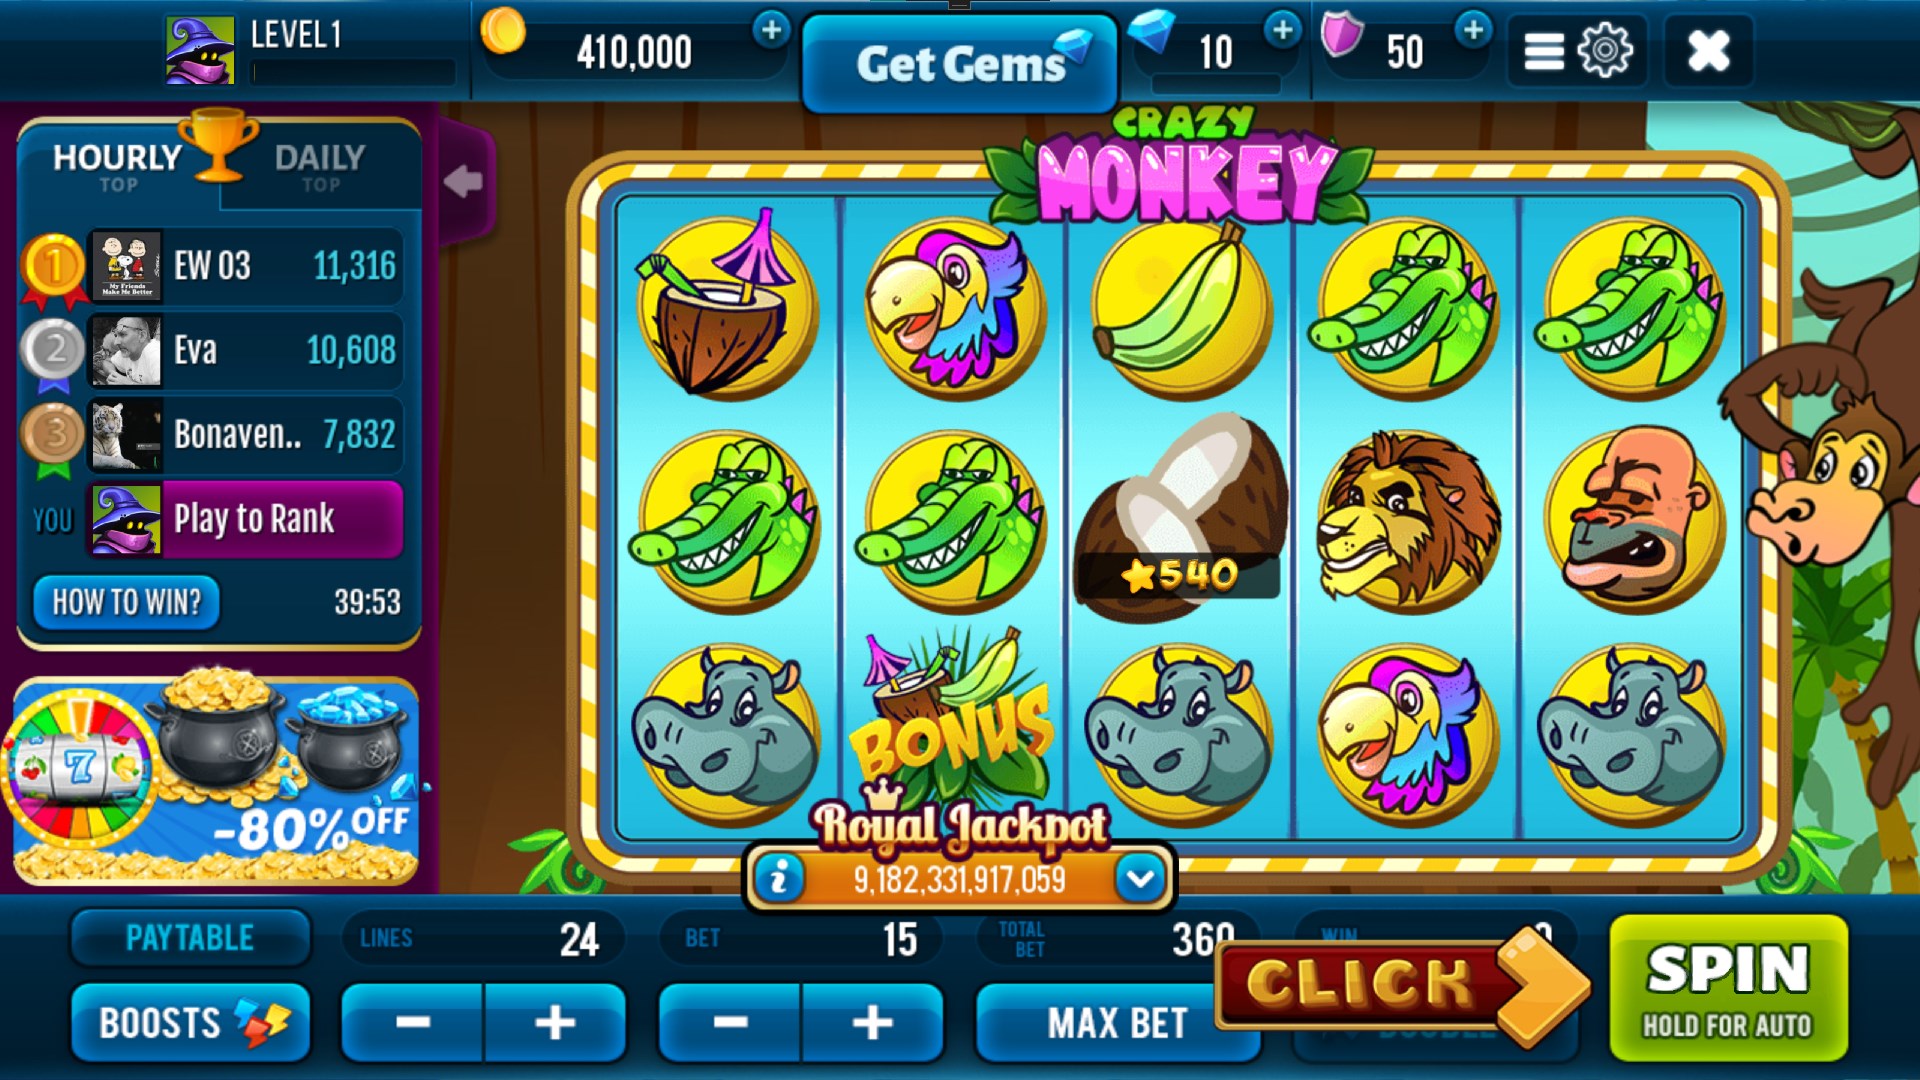 Imágen 10 Crazy Monkey Wild Slot Machine windows